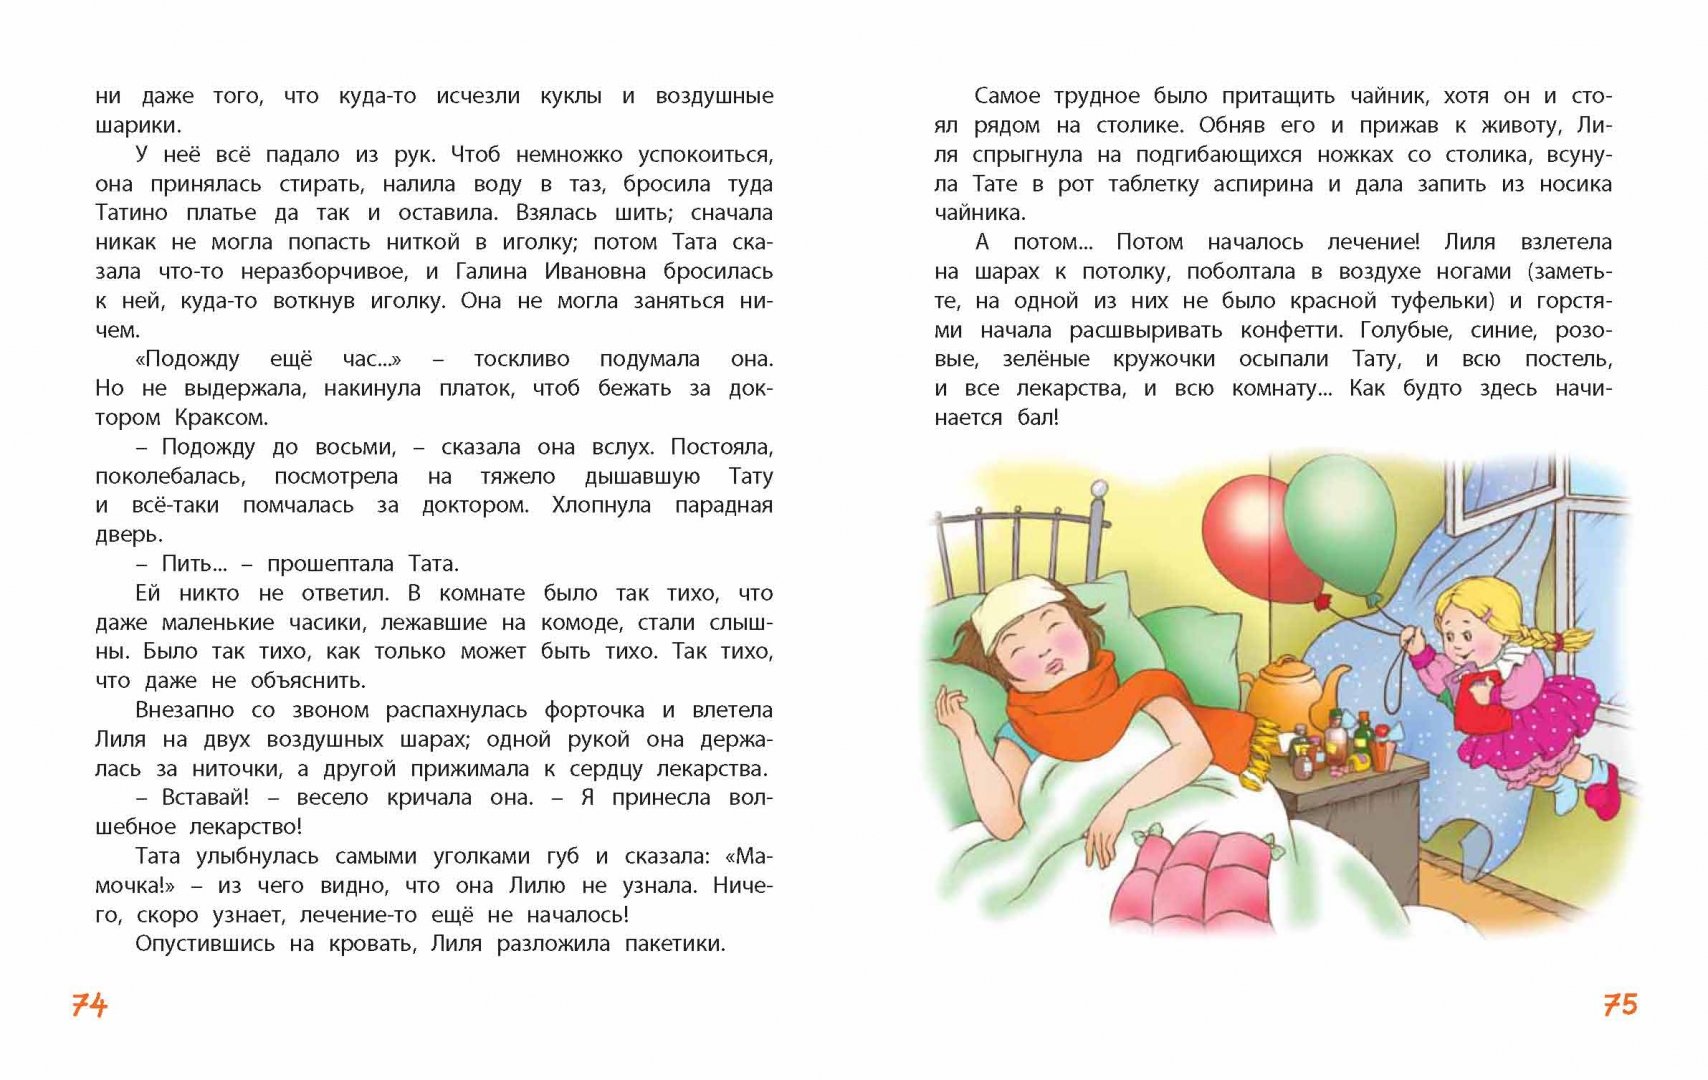 Иллюстрация 13 из 26 для Кукольная комедия - Виткович, Ягдфельд | Лабиринт - книги. Источник: Лабиринт